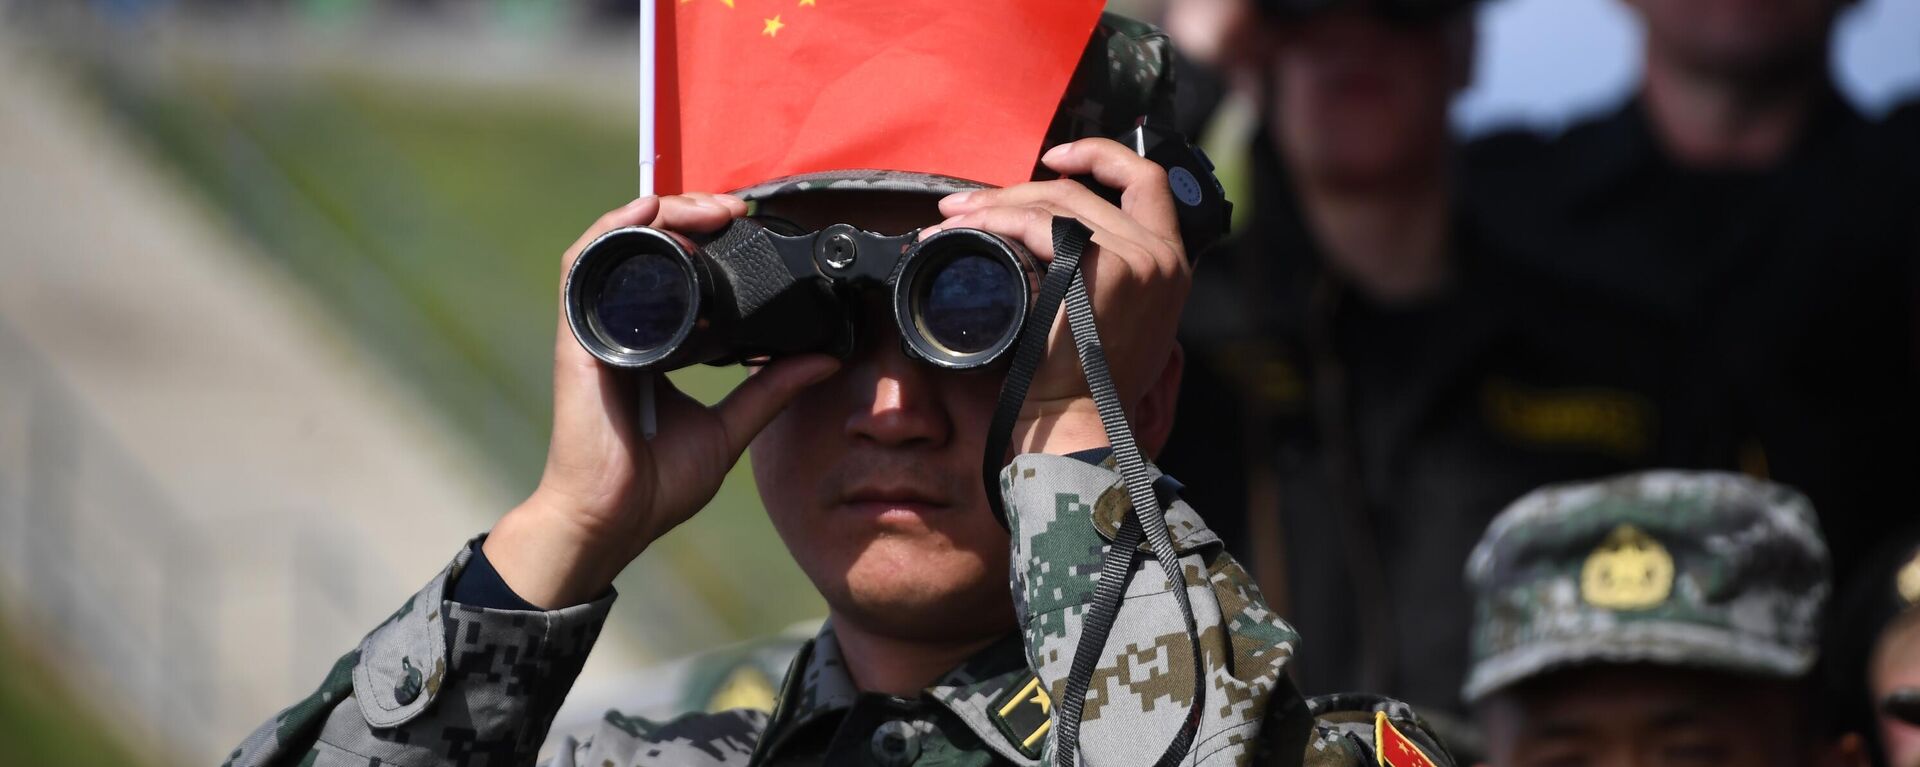 Военнослужащий армии Китая наблюдает в бинокль за соревнованиями  - Sputnik Таджикистан, 1920, 27.08.2021